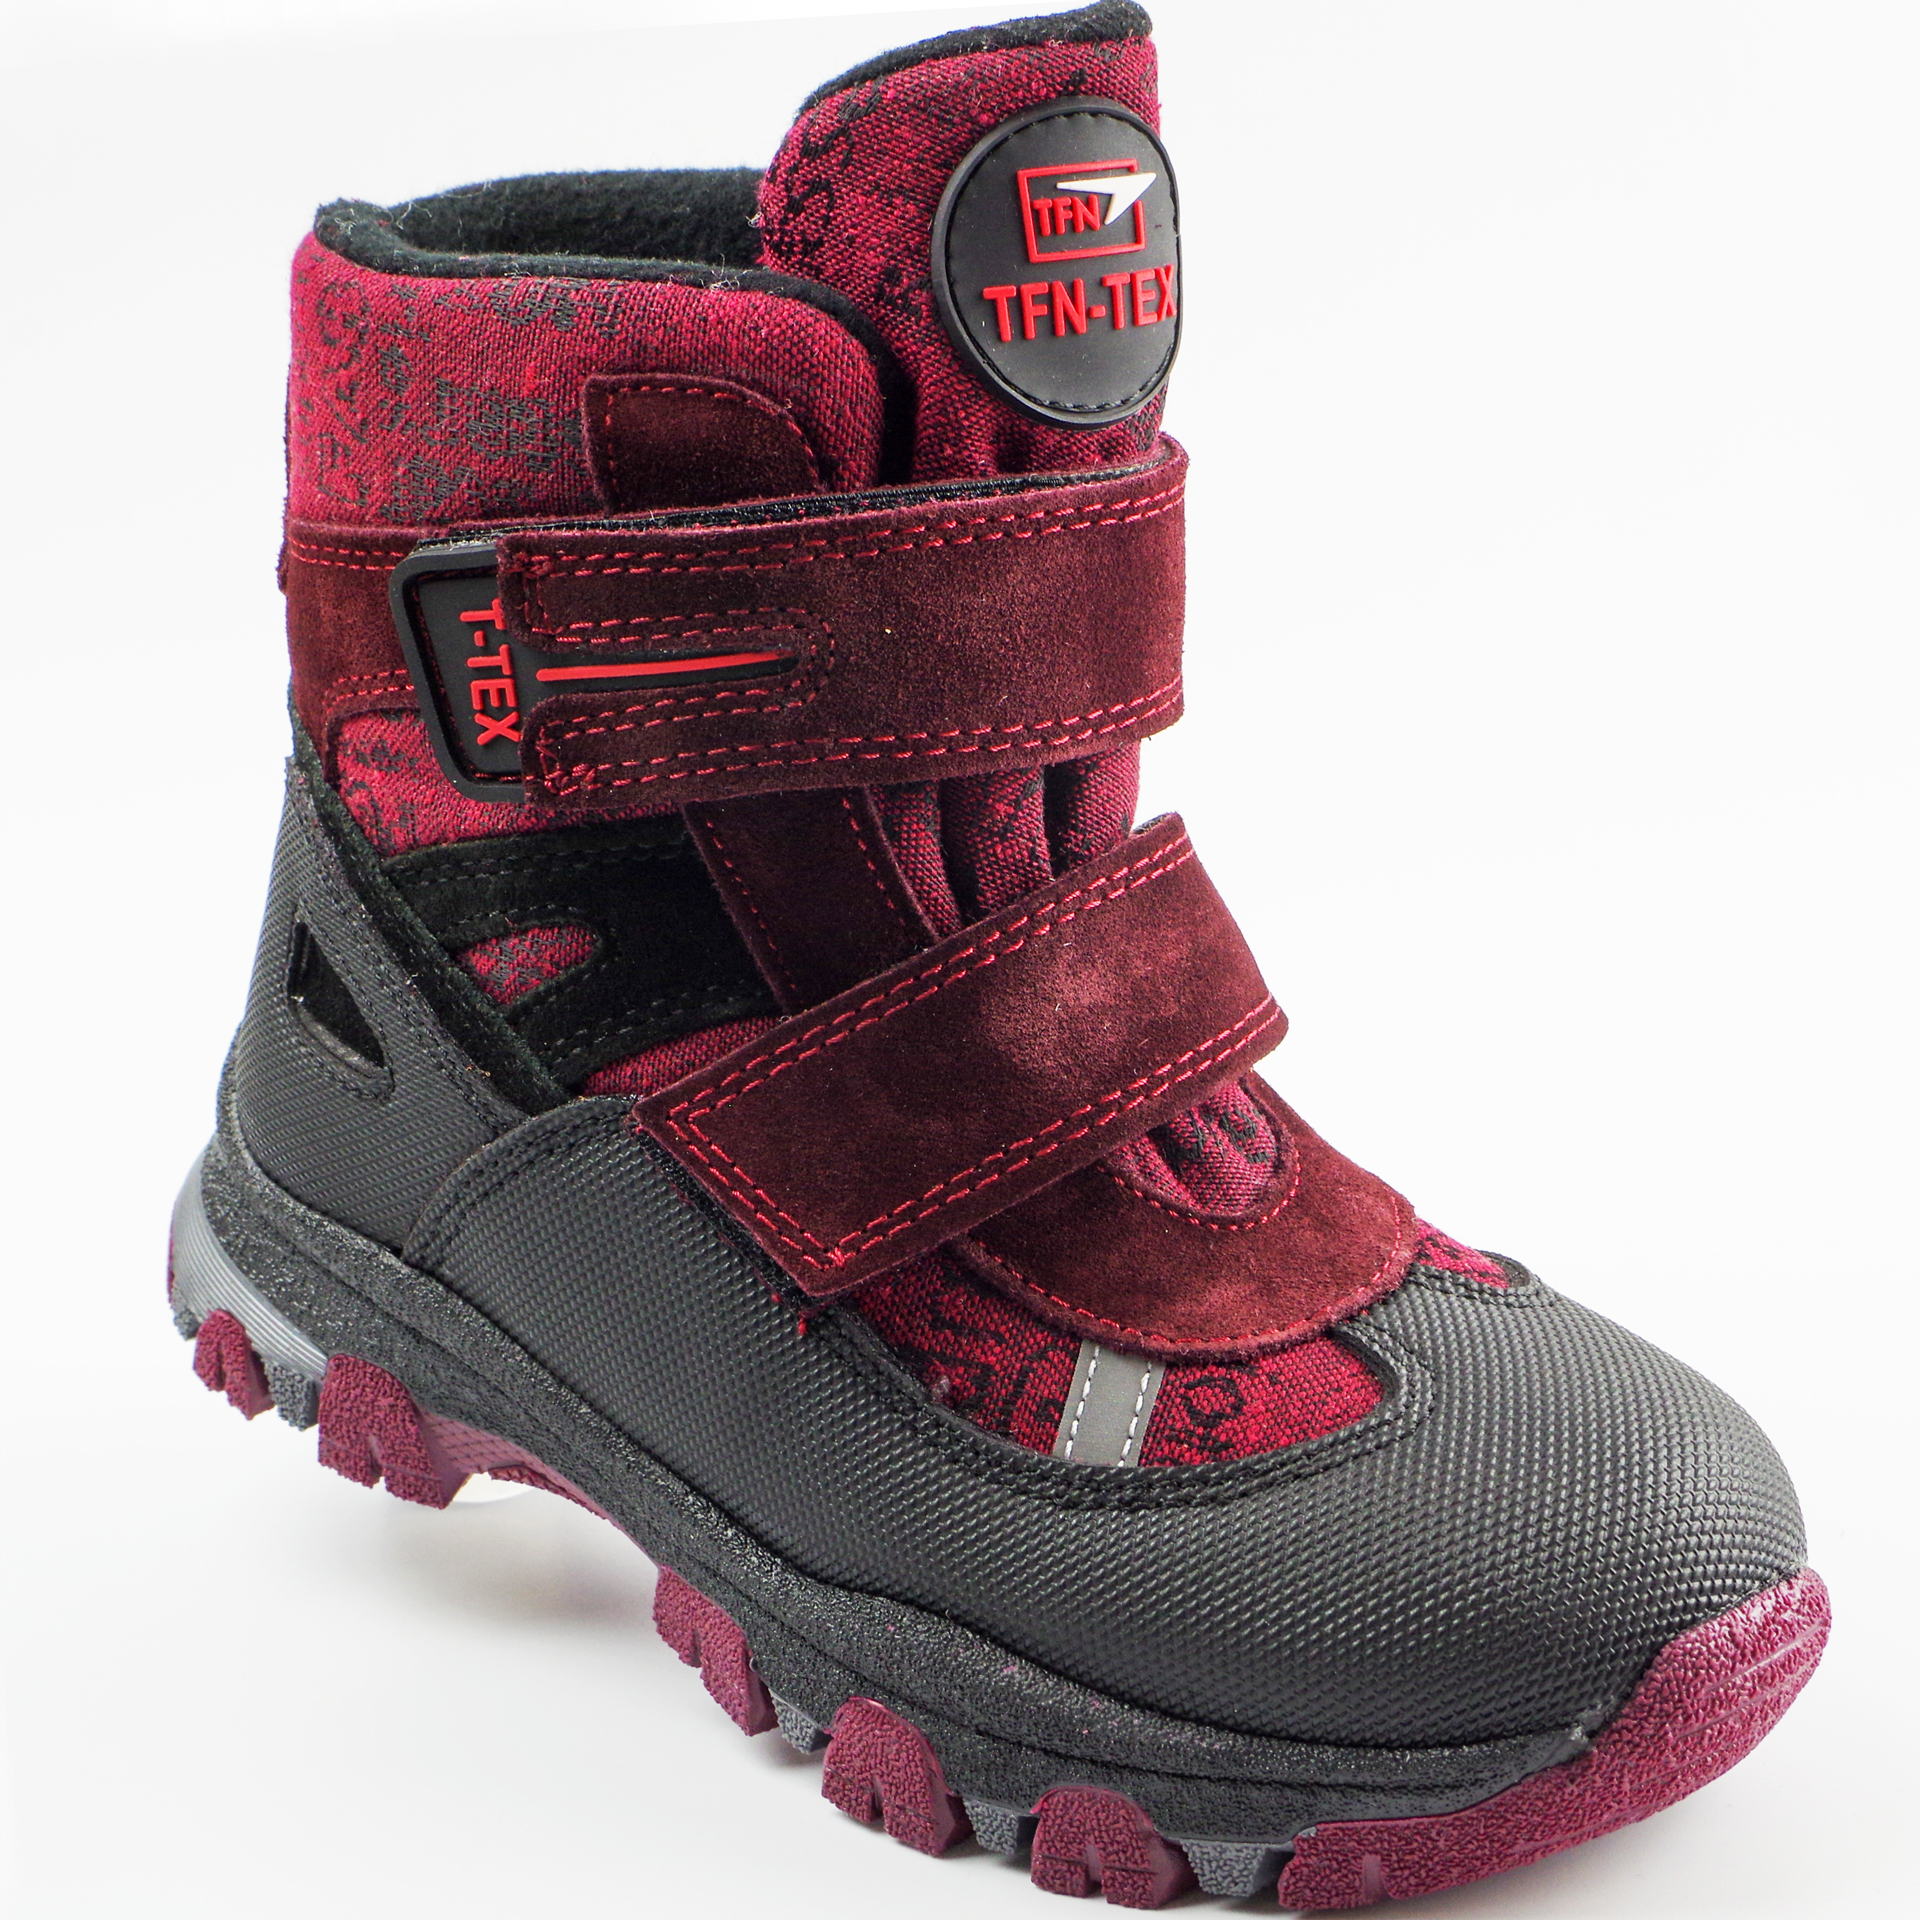 Зимові мембранні черевики (2153) для дівчинки, матеріал Мембрана, Червоний колір, 31-36 розміри – Sole Kids. Фото 1